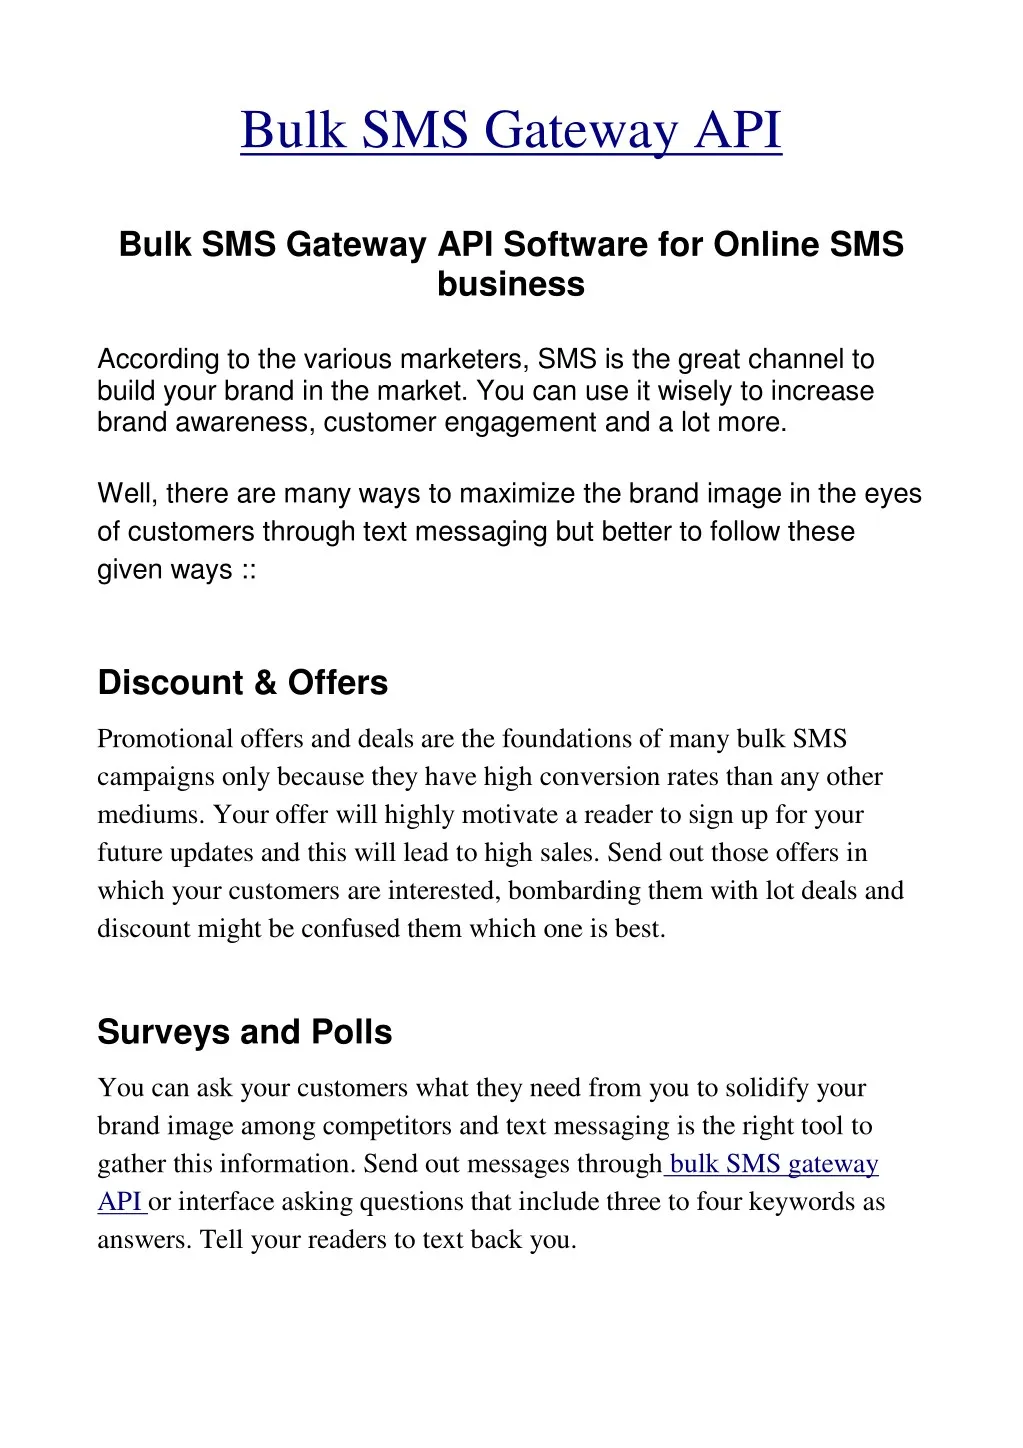 bulk sms gateway api bulk sms gateway n.